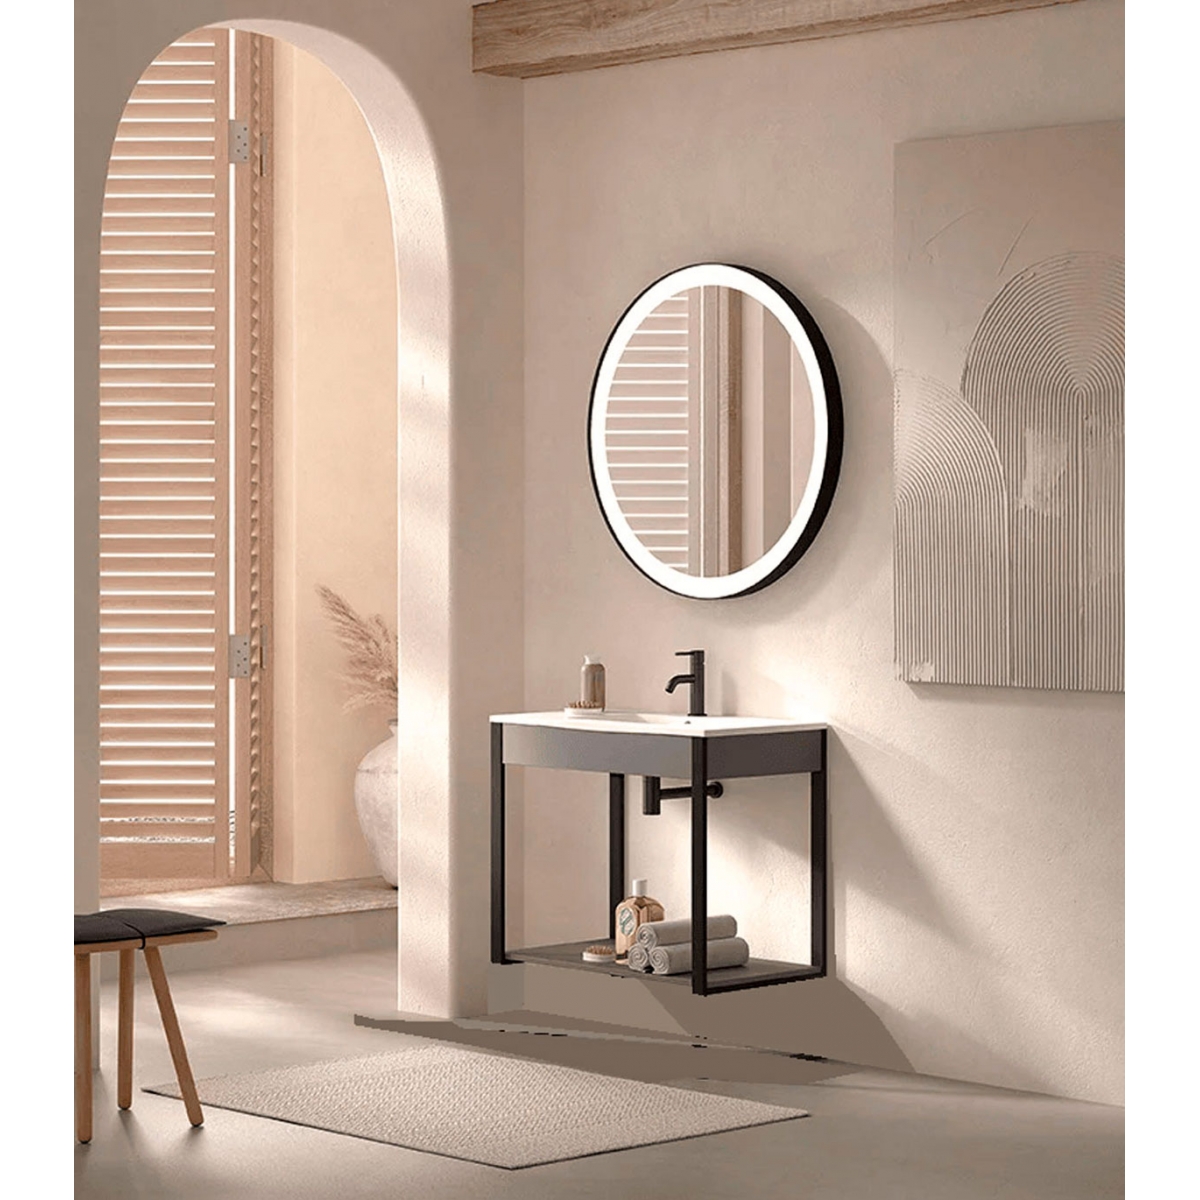 Muebles de baño: Roma 70 cm incluye encimera y espejo